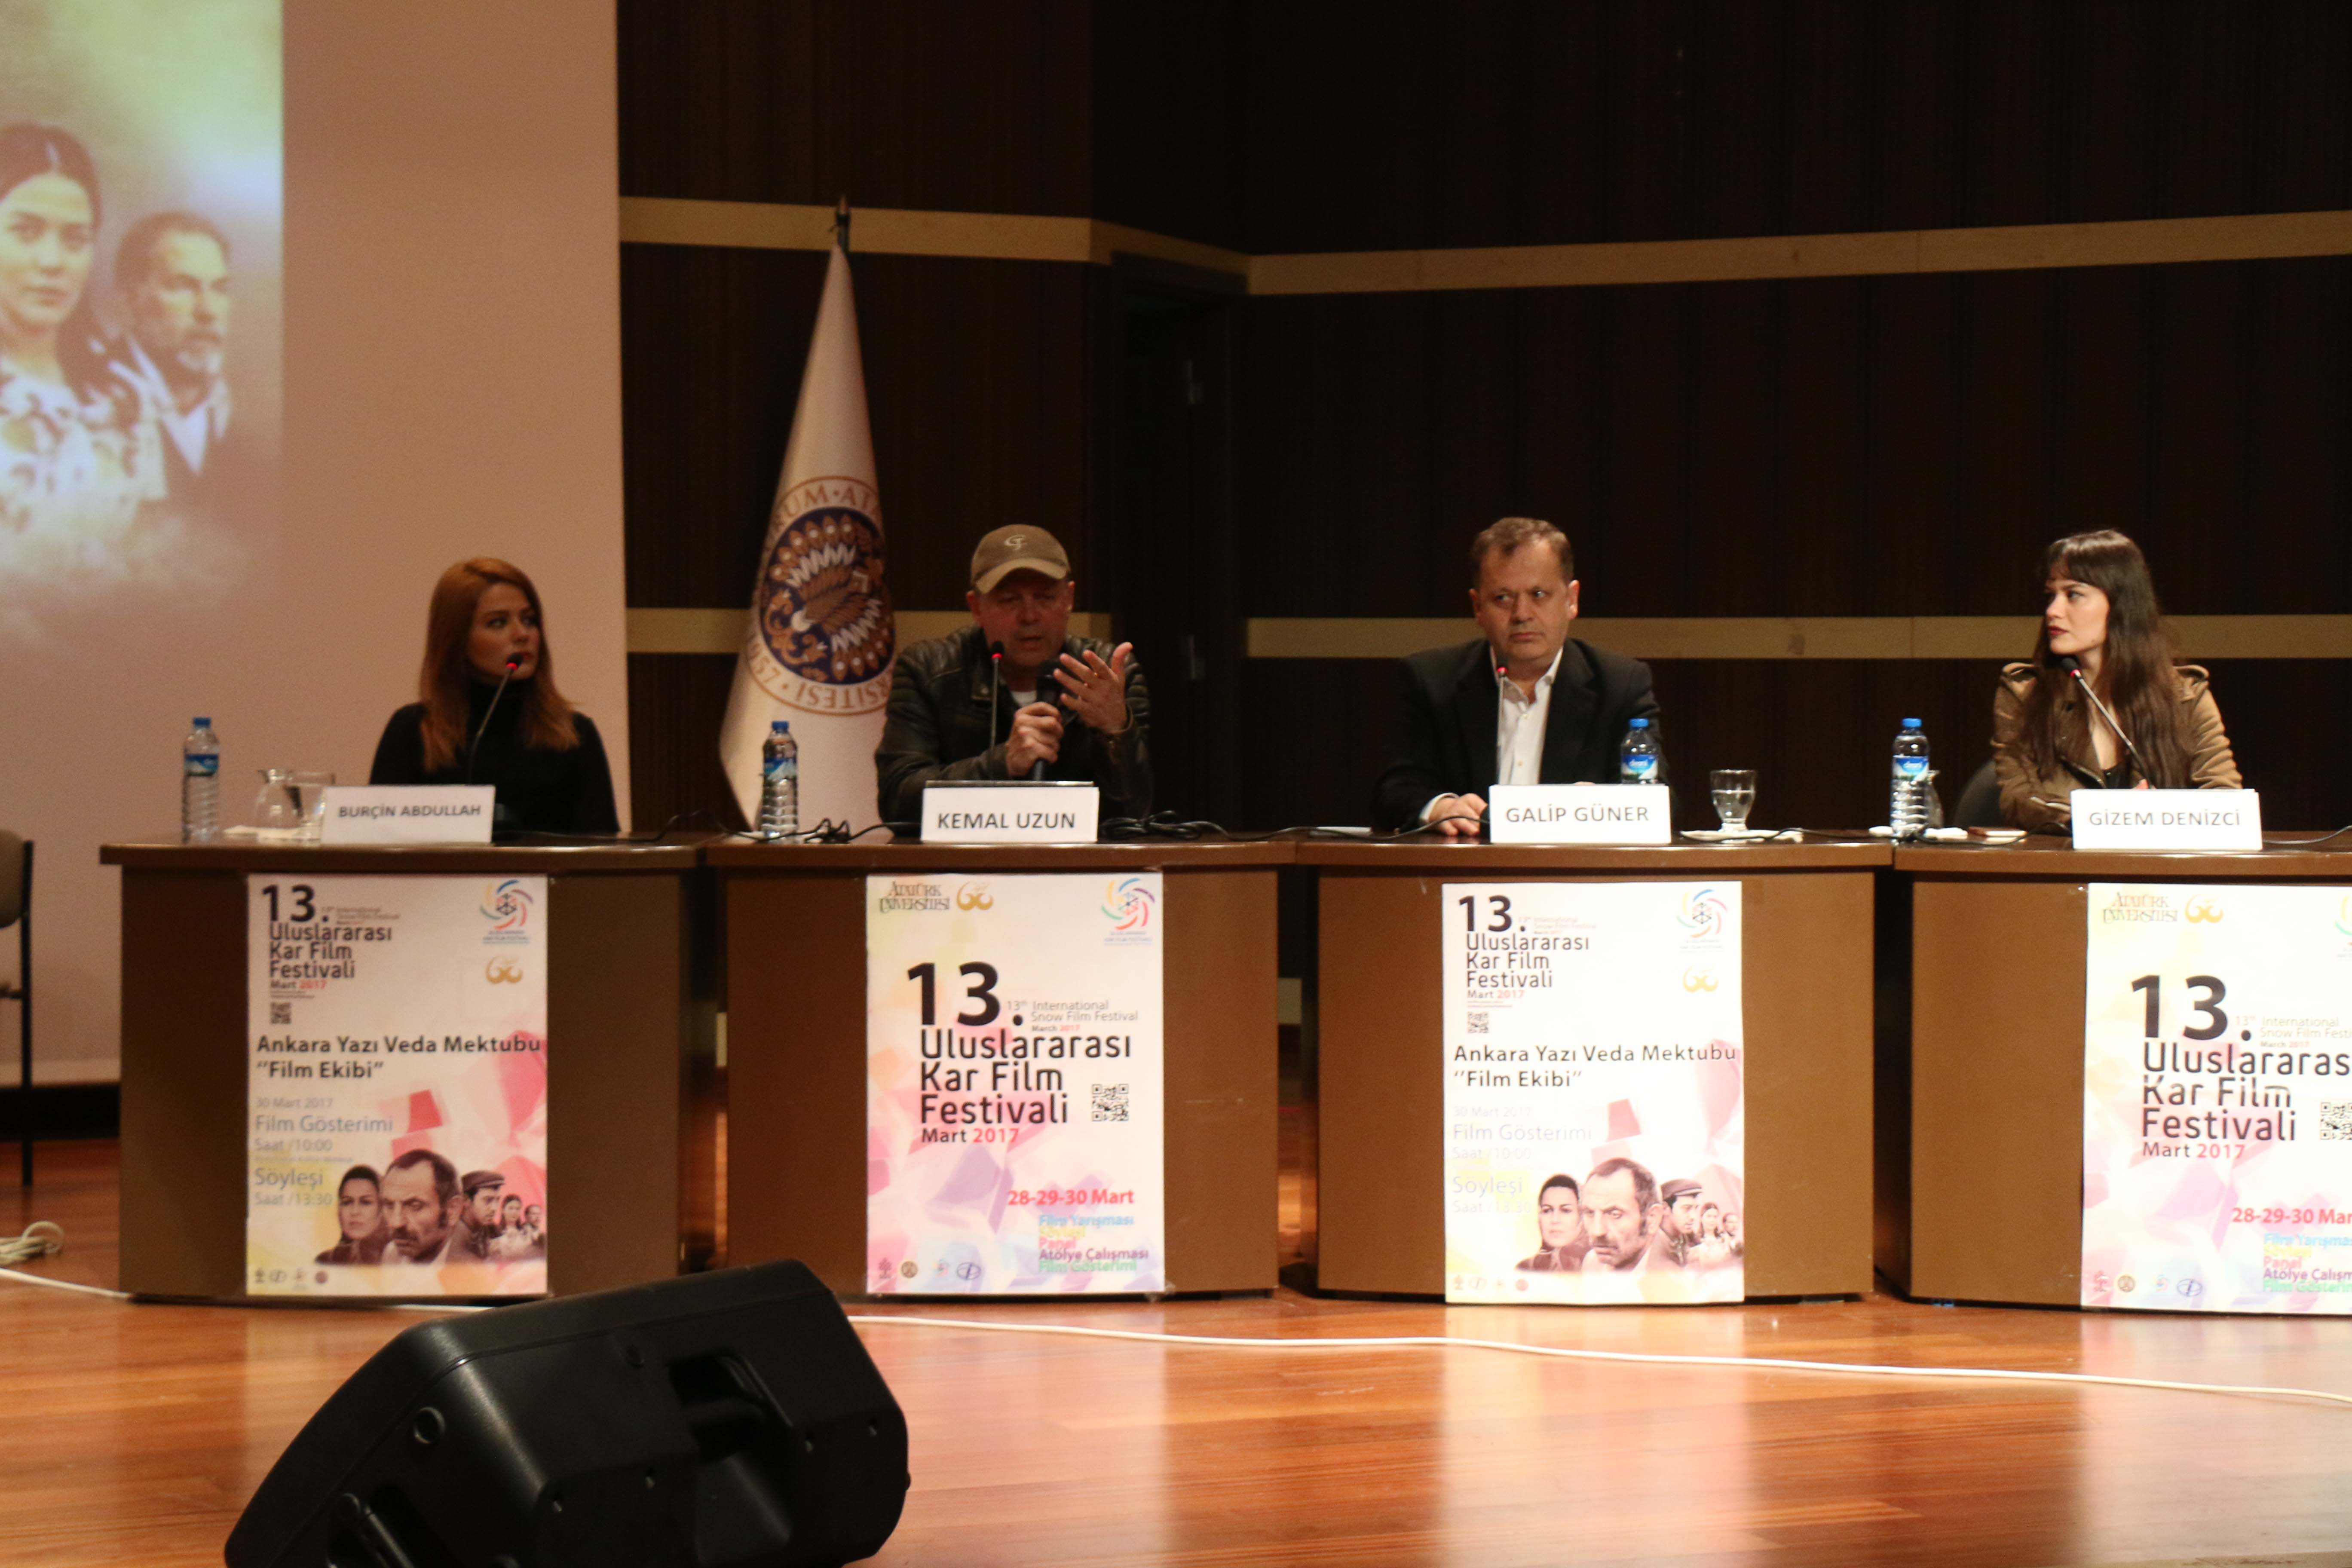 Kar Film Festivali, “Ankara Yazı Veda Mektubu” film ekibini ağırladı